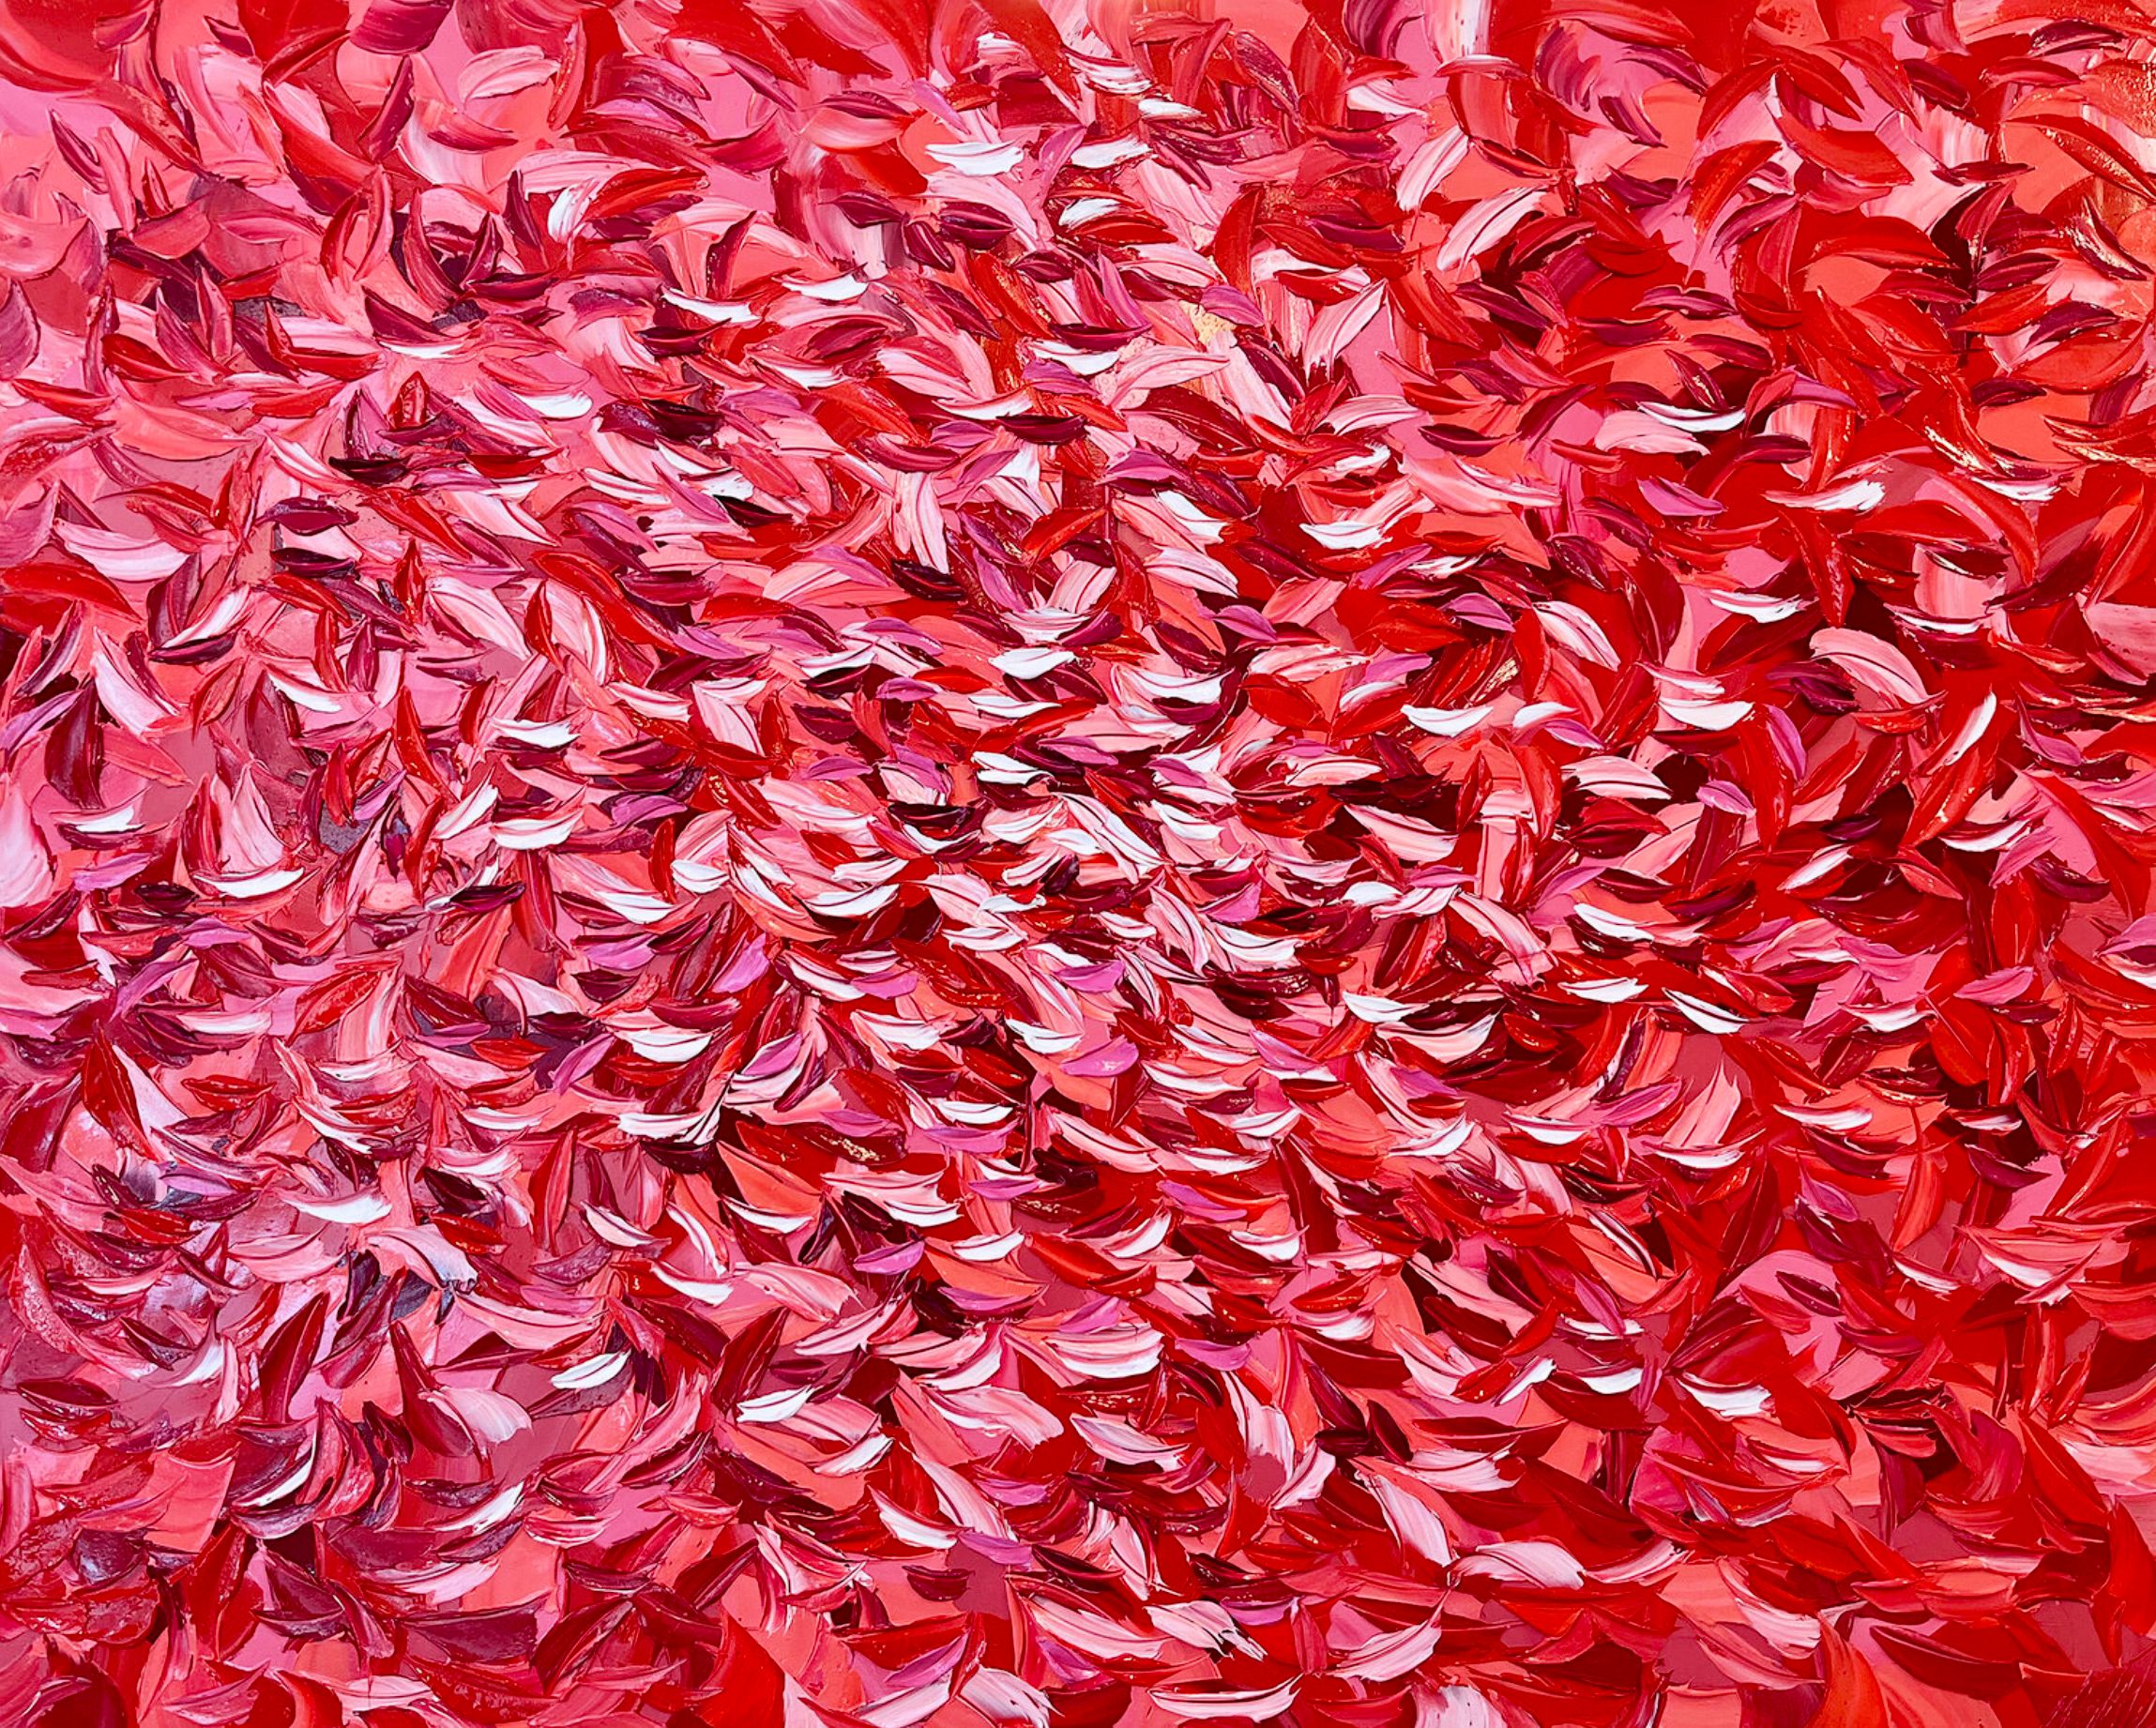 Oliver Messas "L'envolée" Pintura abstracta hojas rojas